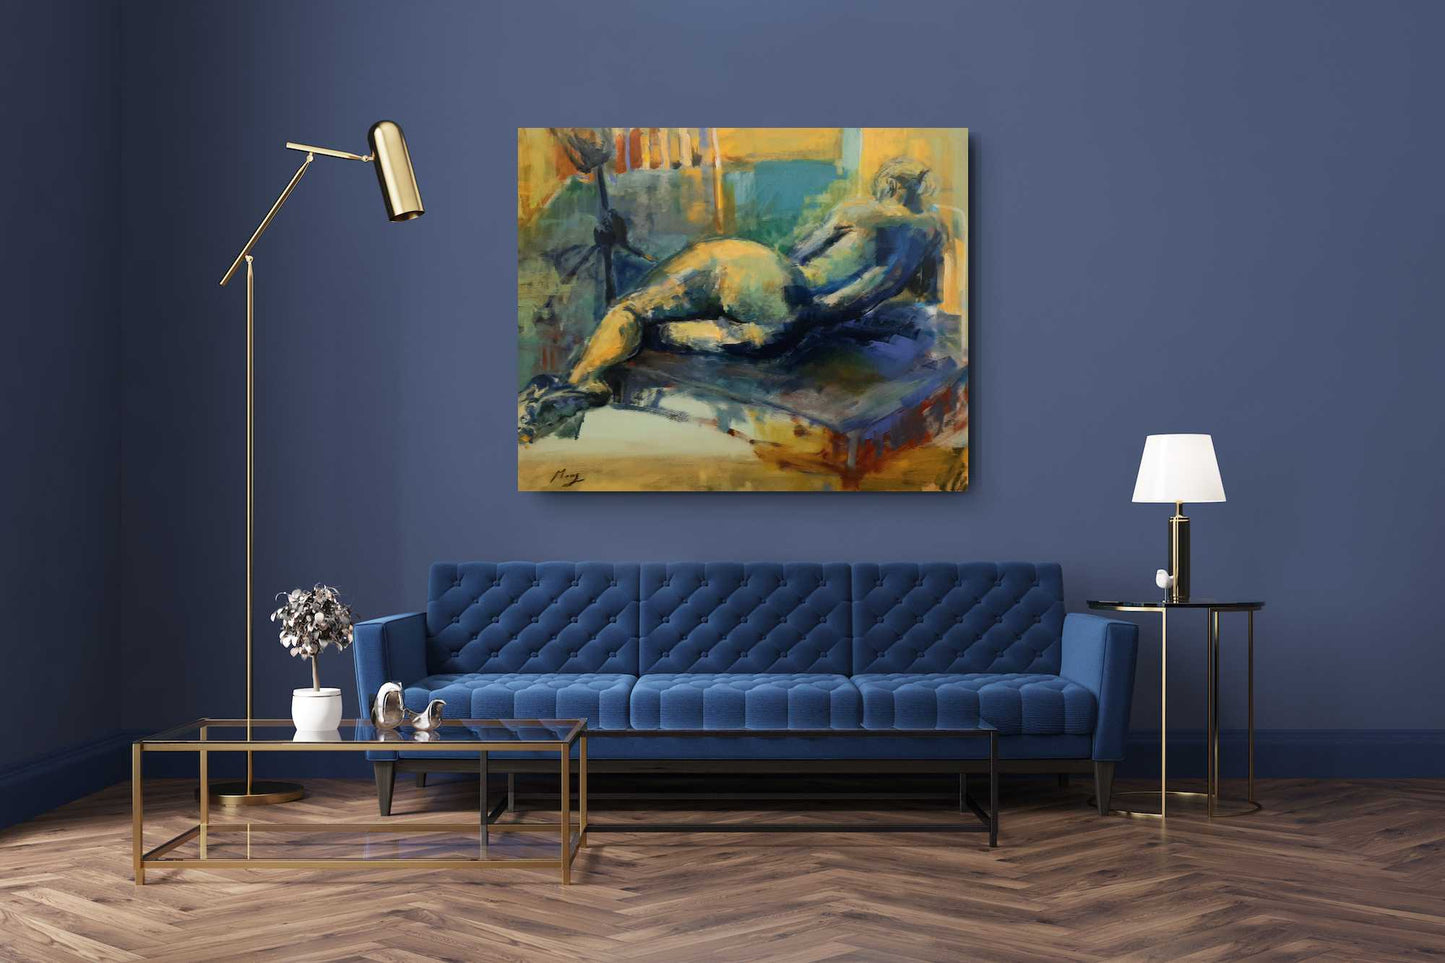 Frau sein - Liegende in blau und gelb, Harmonie der Weiblichkeit / Acryl auf Leinwand - 80x100cm